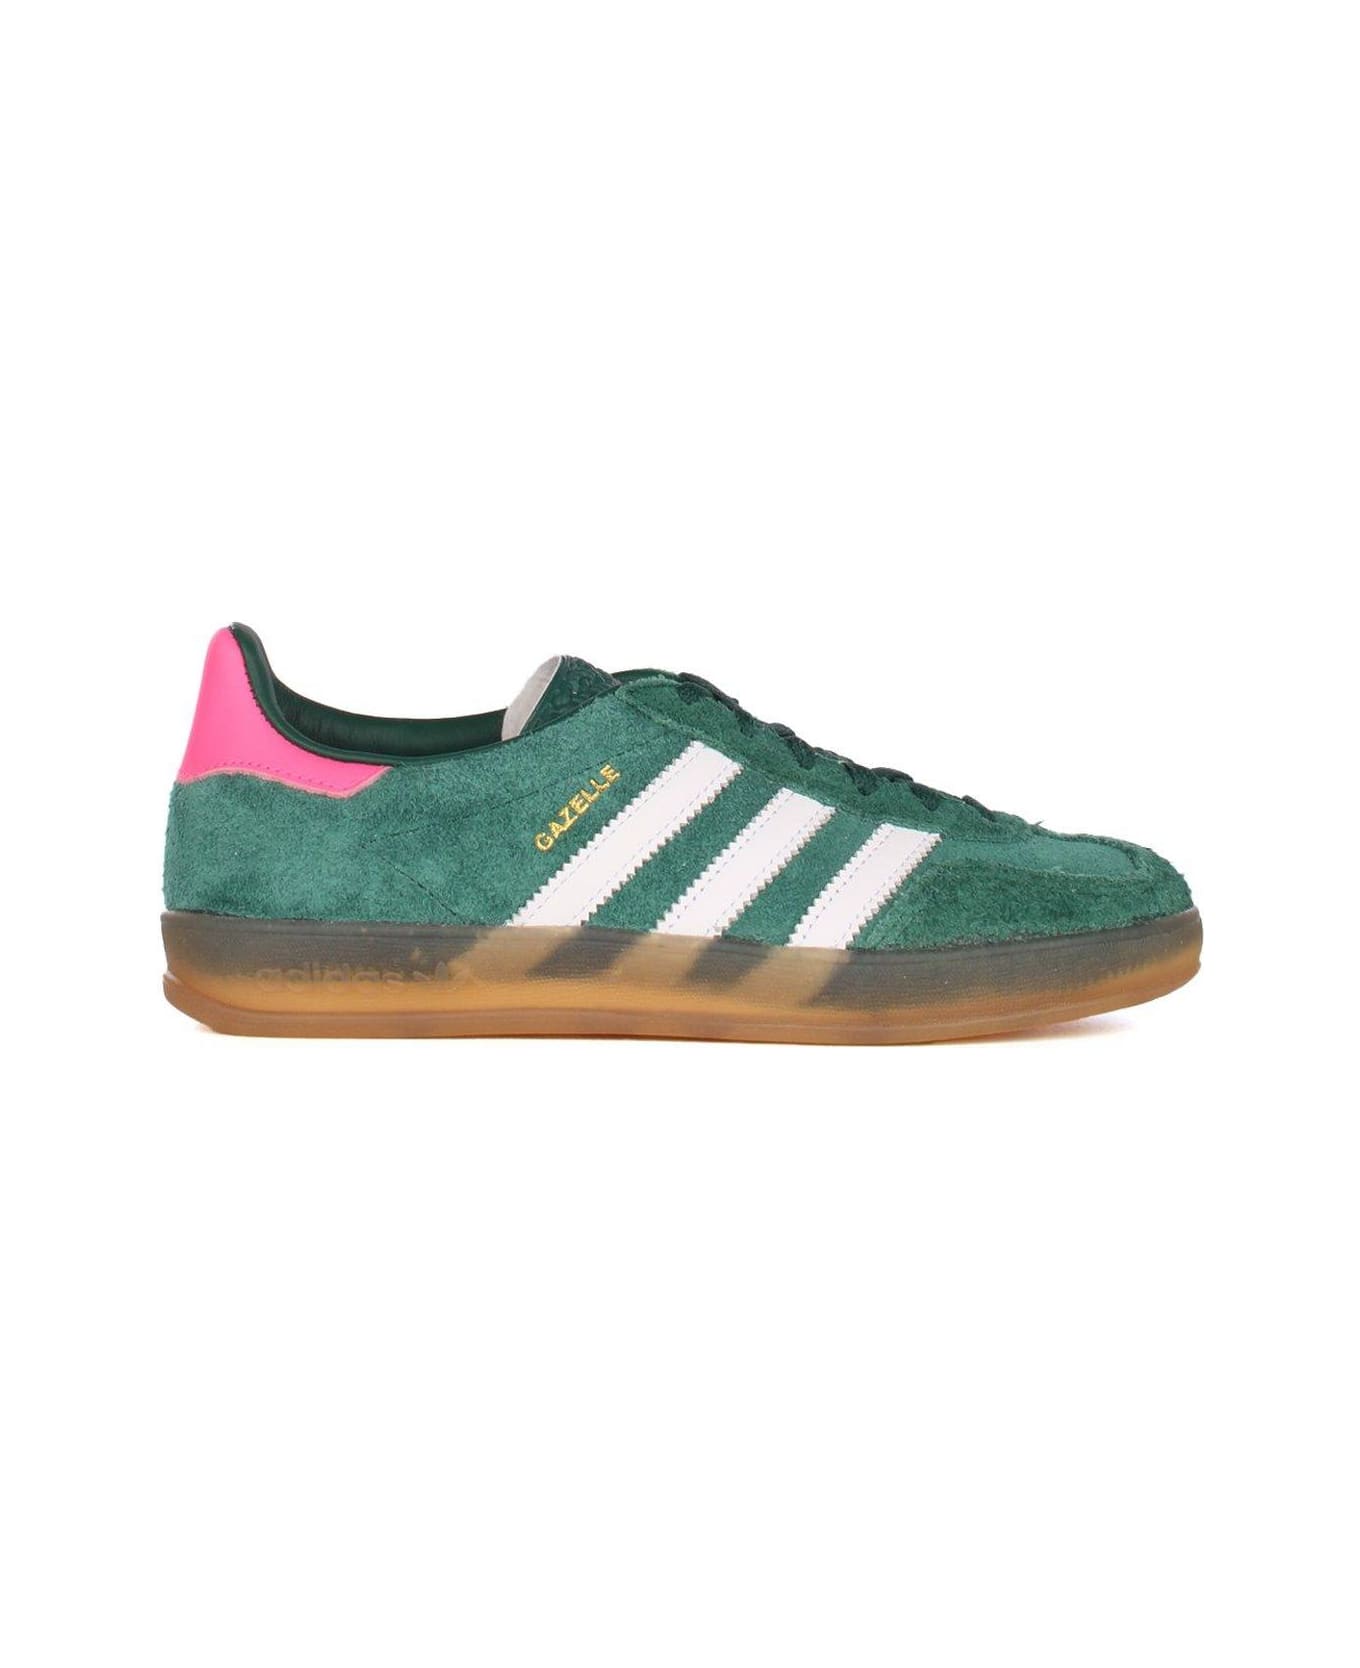 Adidas Originals Gazelle Low-top Sneakers - Green Pink